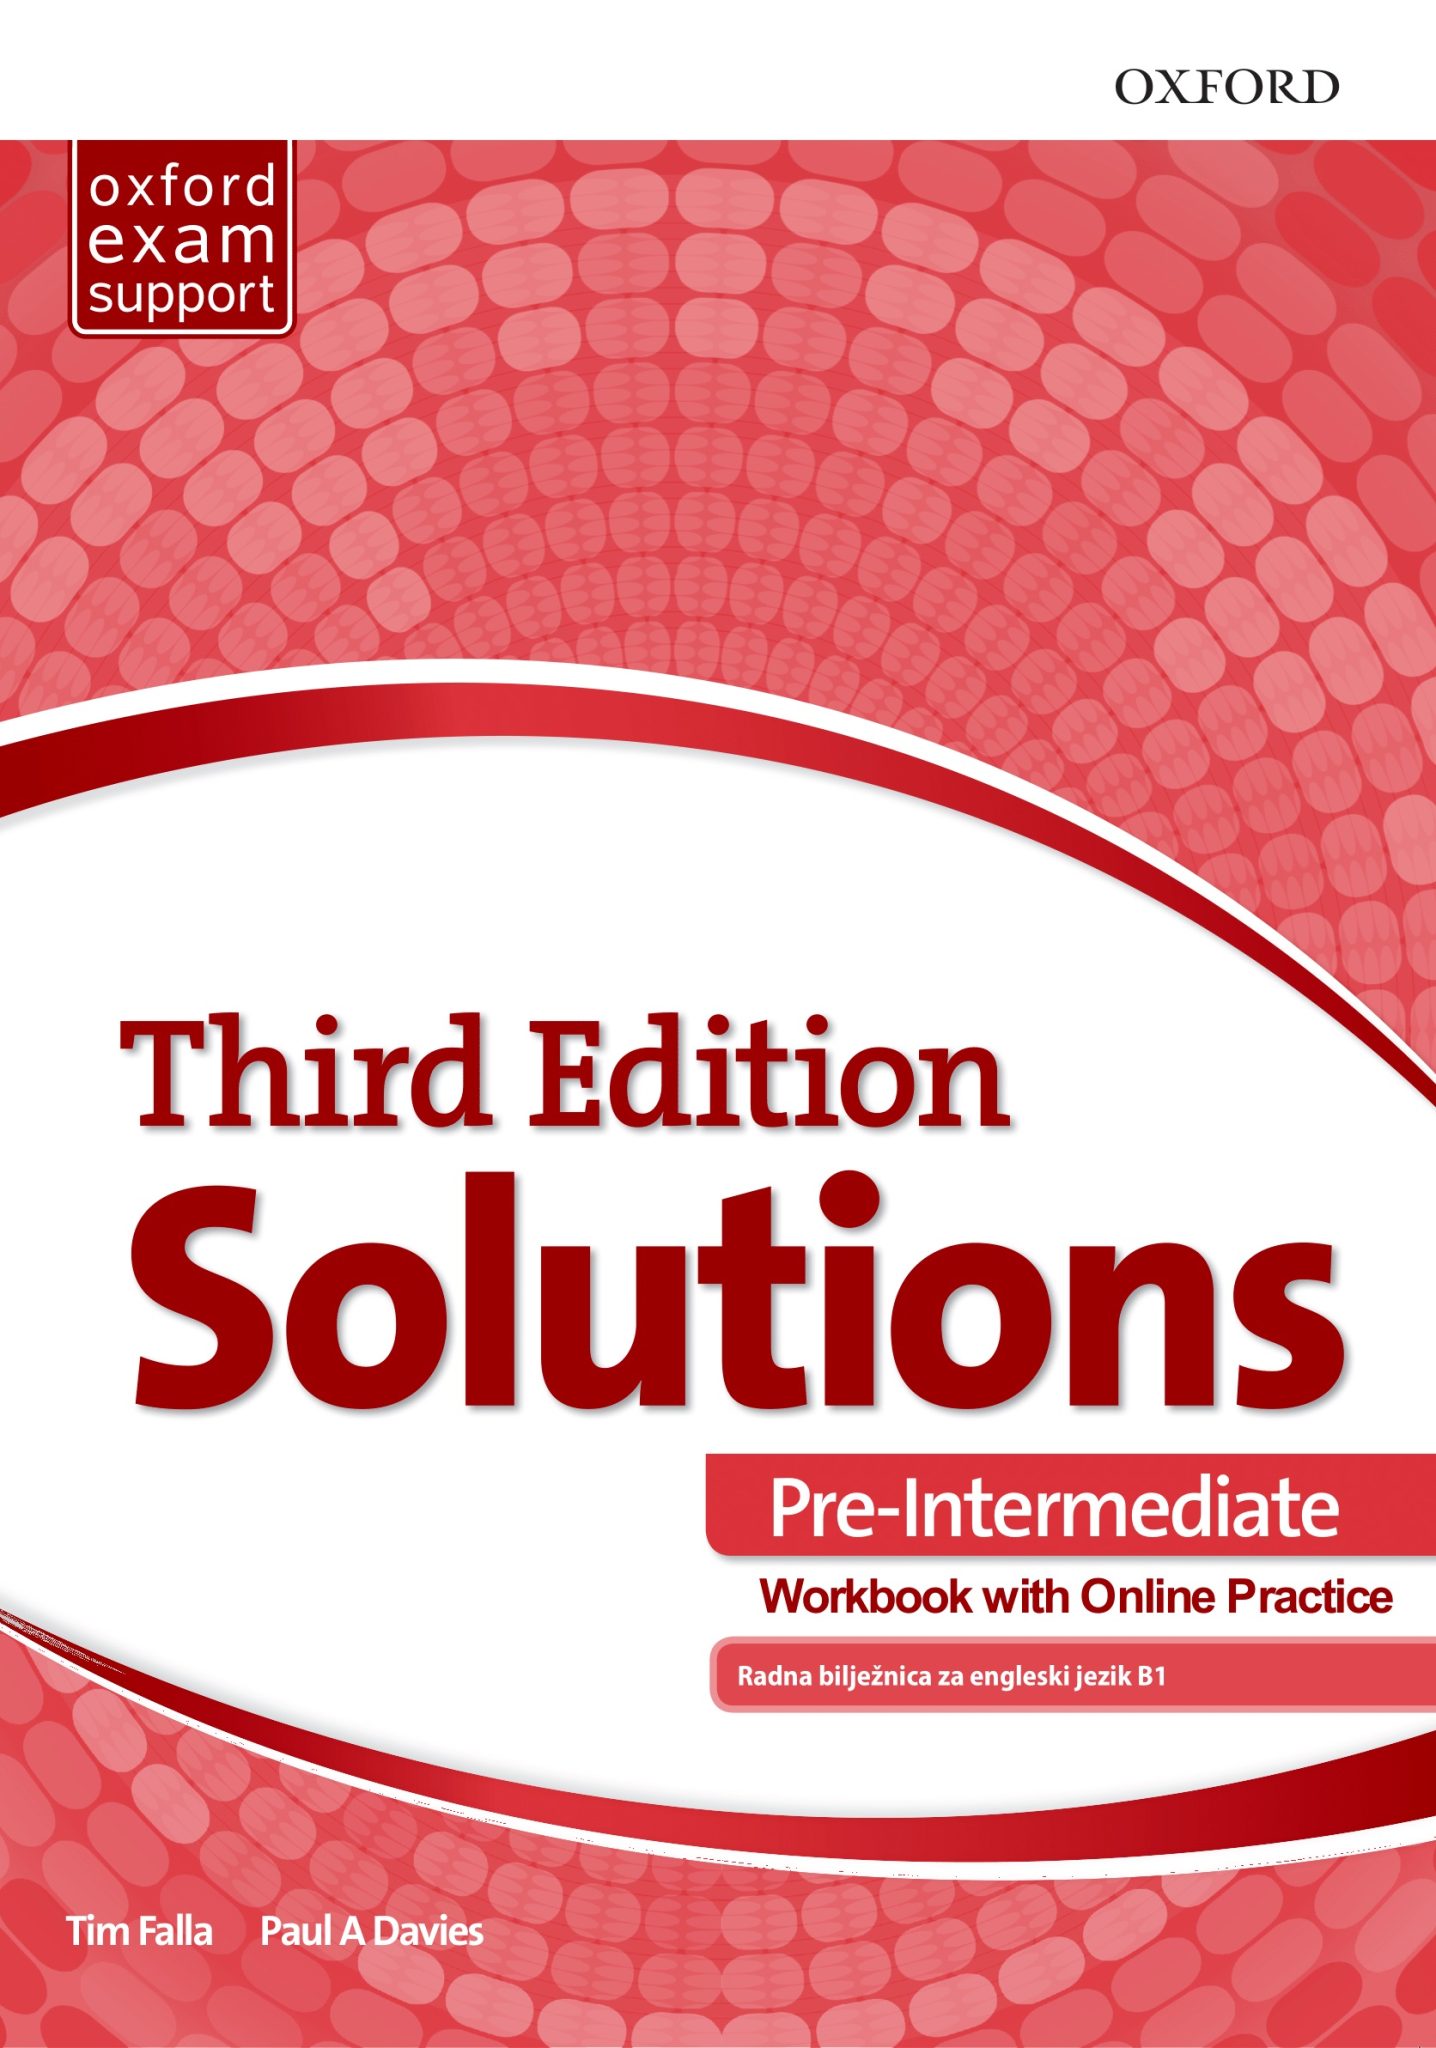 SOLUTIONS 3rd ed. PRE-INTERMEDIATE: radna bilježnica engleskog jezika B1 za gimnazije i 4-godišnje strukovne škole autora Tim Falla, Paul A. Davies